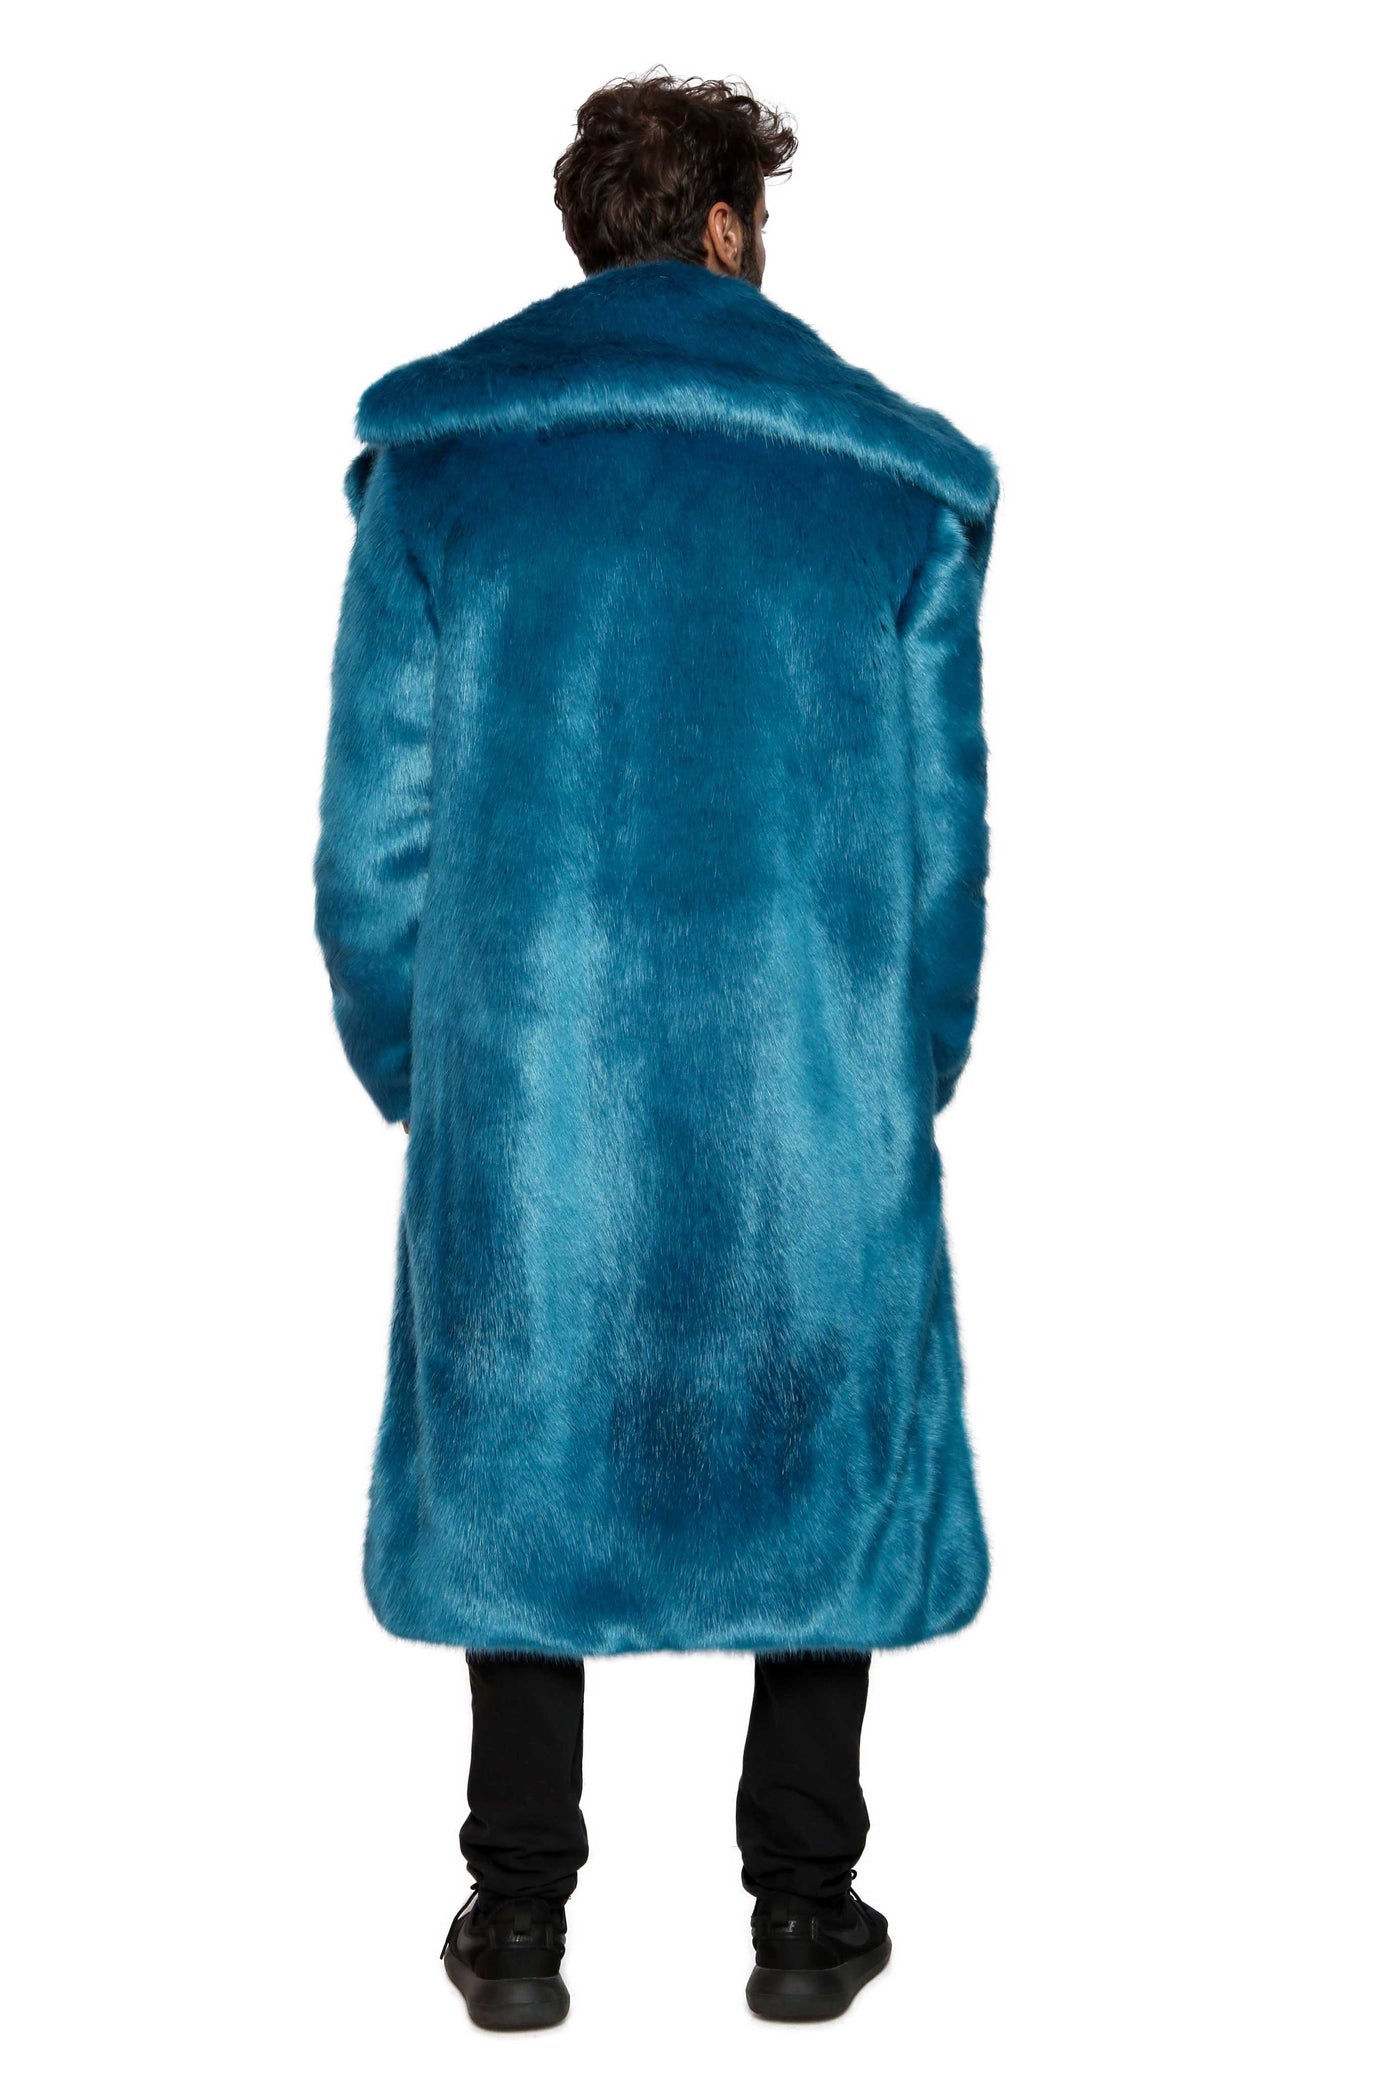 Men's Vandal Coat in "Cookie Monster" Chinchilla STOCK